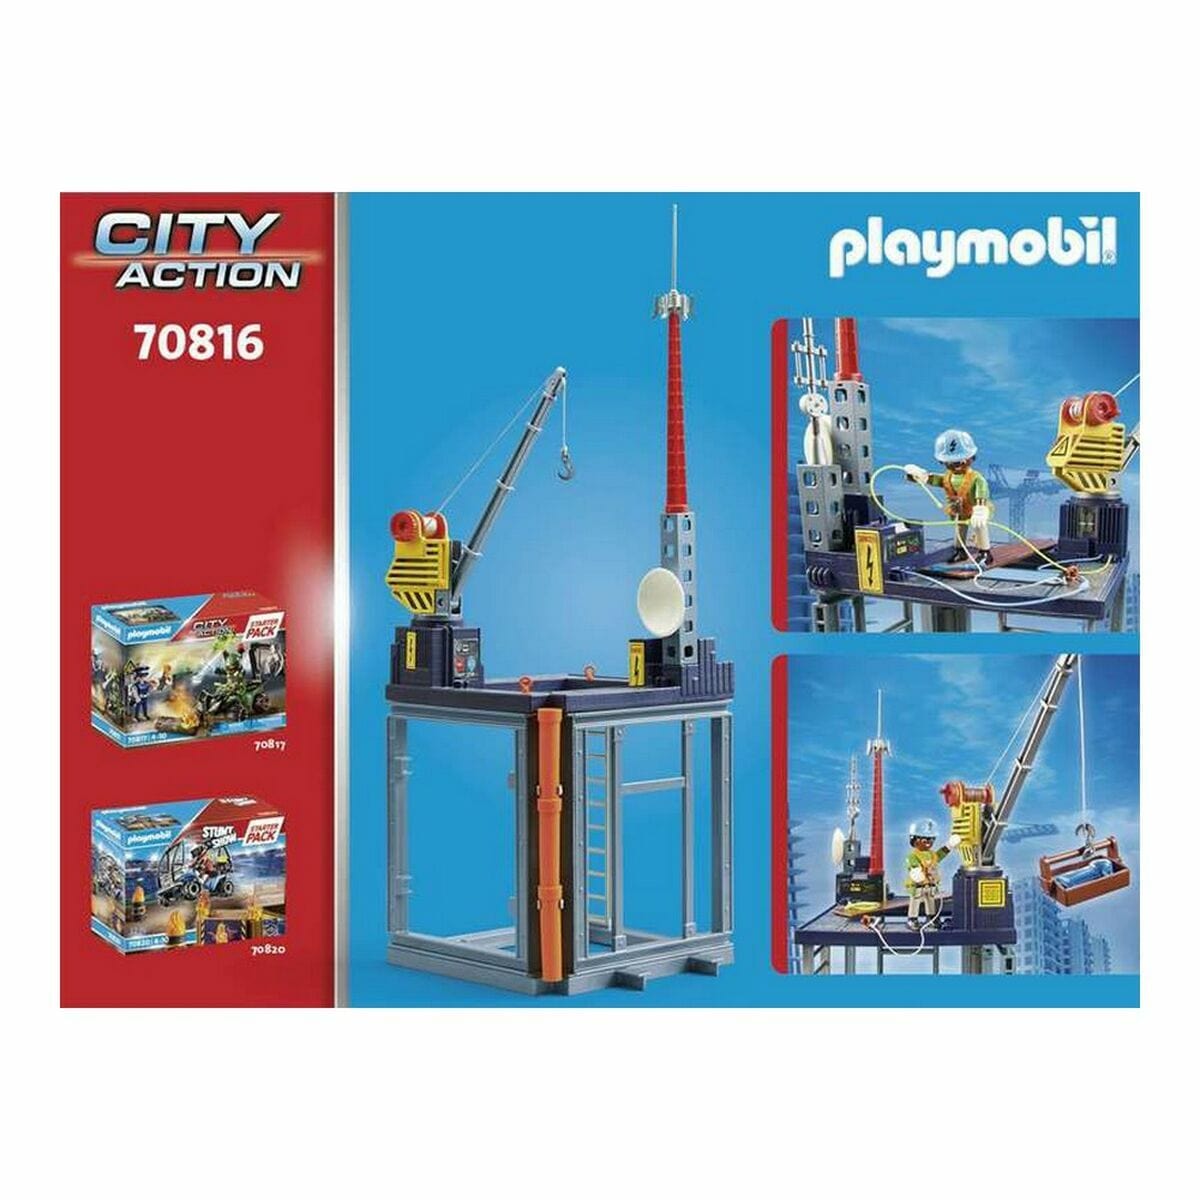 Playmobil Spielzeug | Kostüme > Spielzeug und Spiele > Weiteres spielzeug Playset Playmobil 70816A 70816 59 Stücke